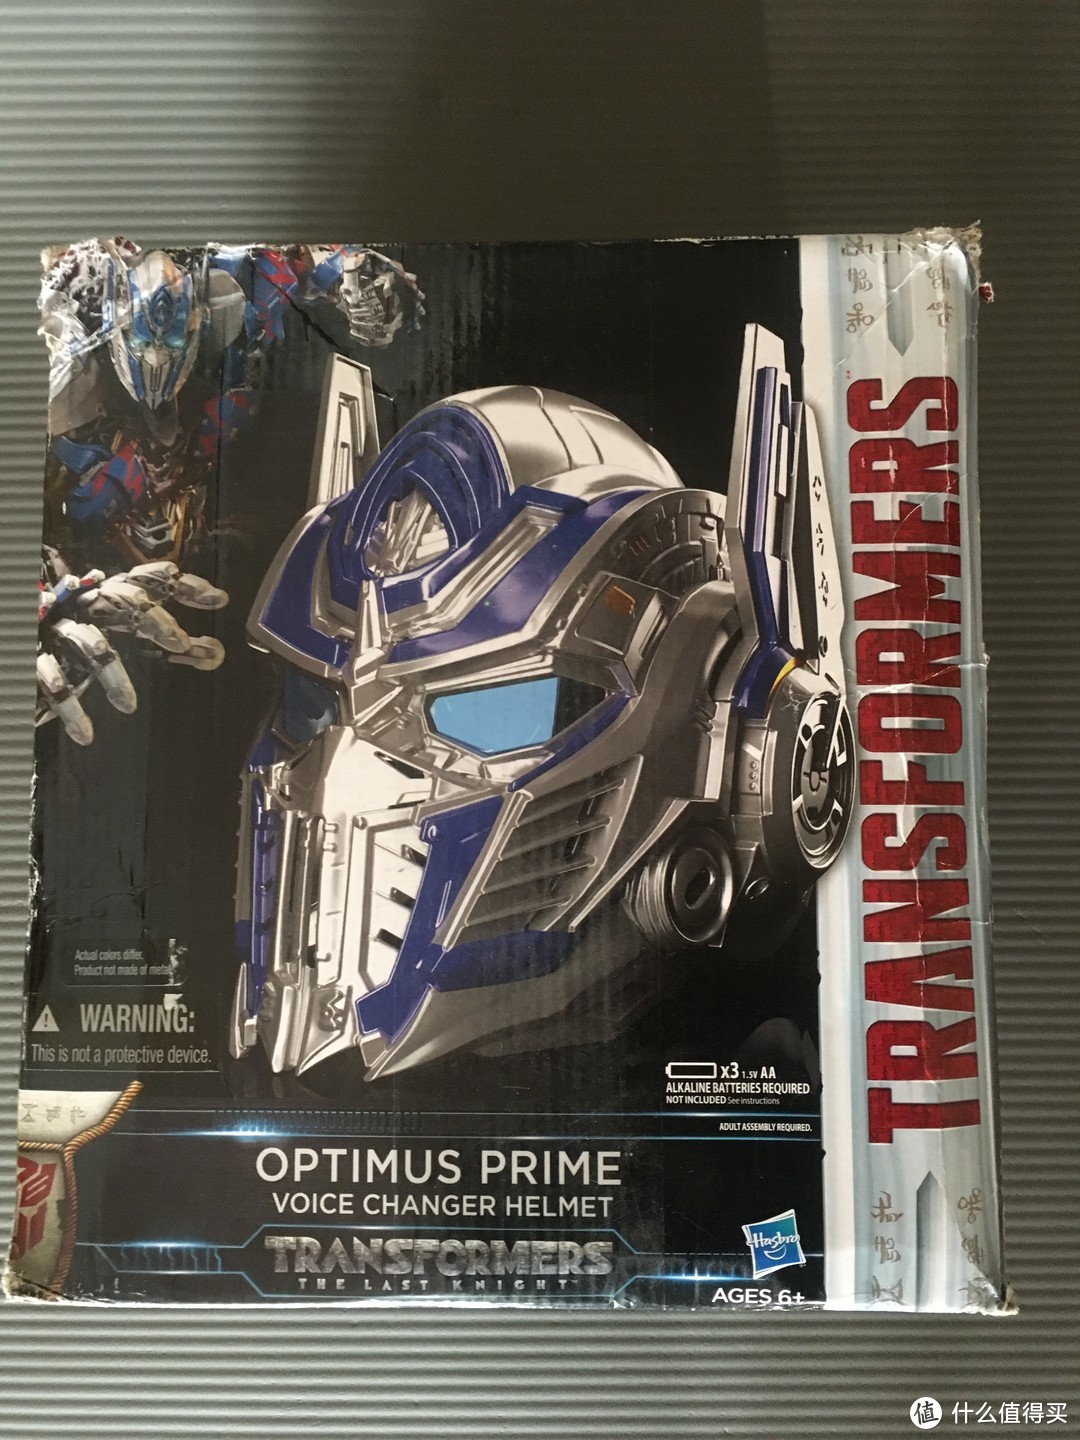 #本站首晒#I am Optimus Prime！大哥附体 ——可变声擎天柱头盔